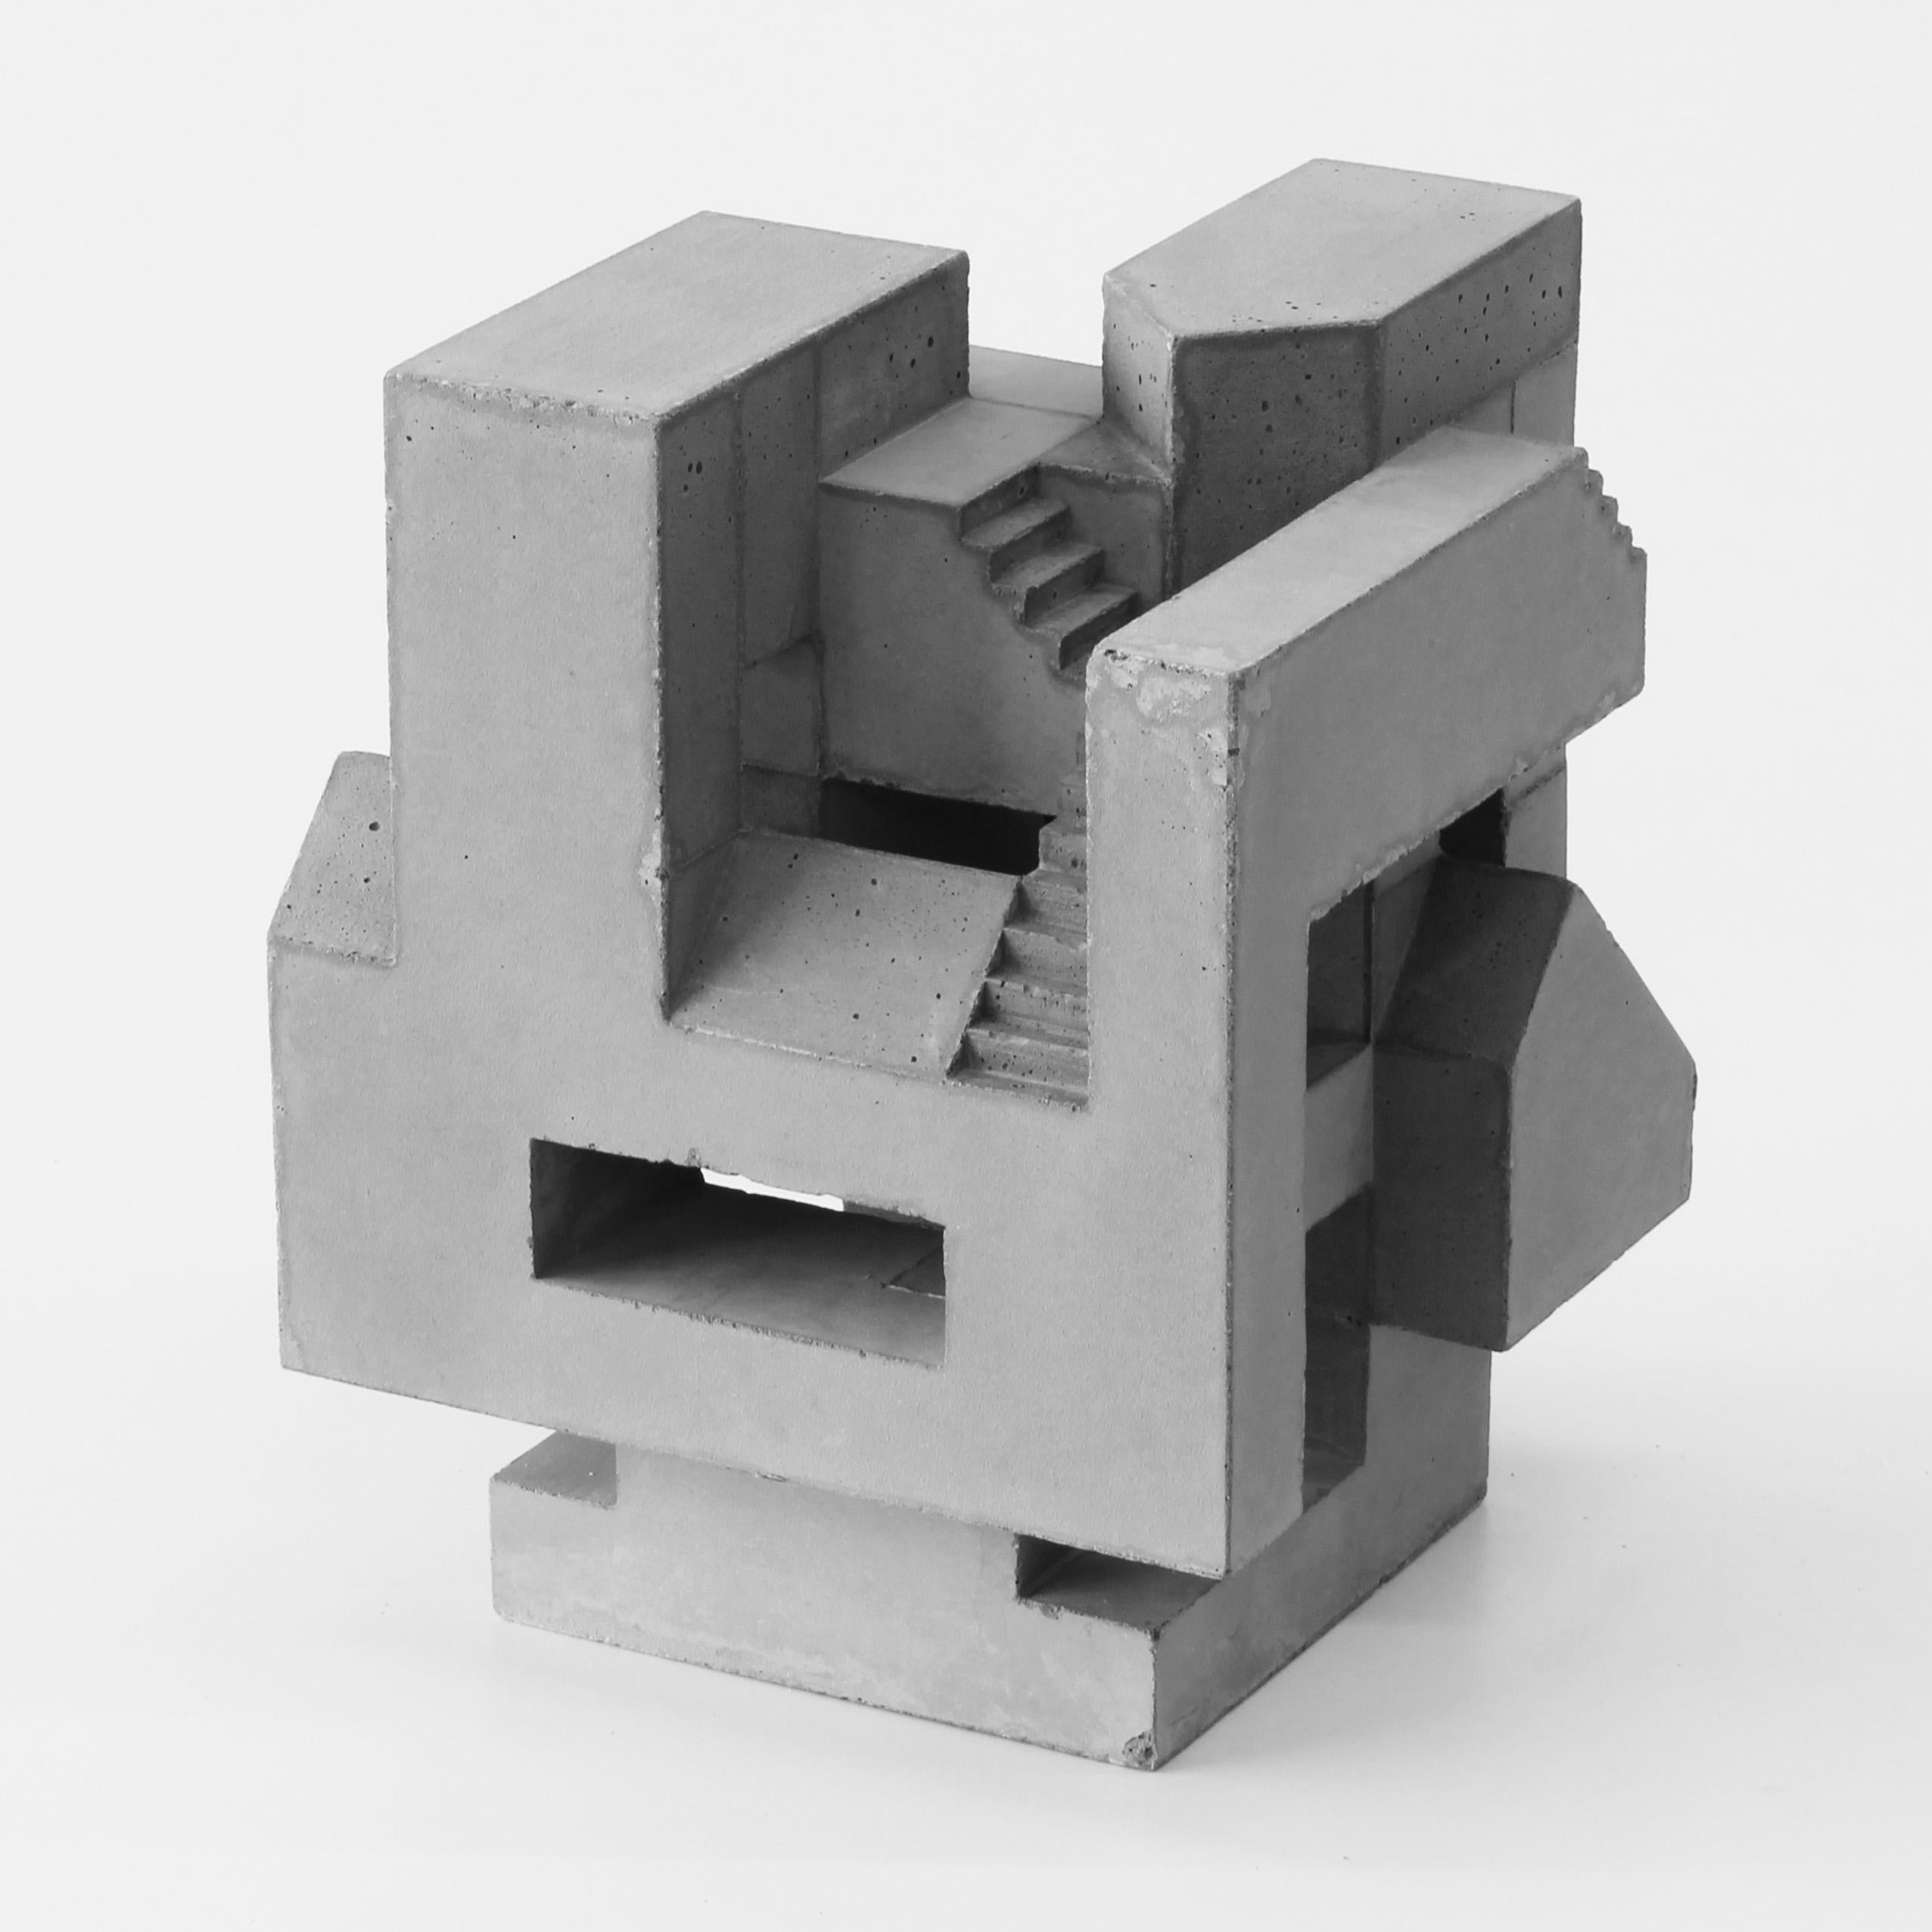 David Umemoto Figurative Sculpture - Six Sided Piece Side 6